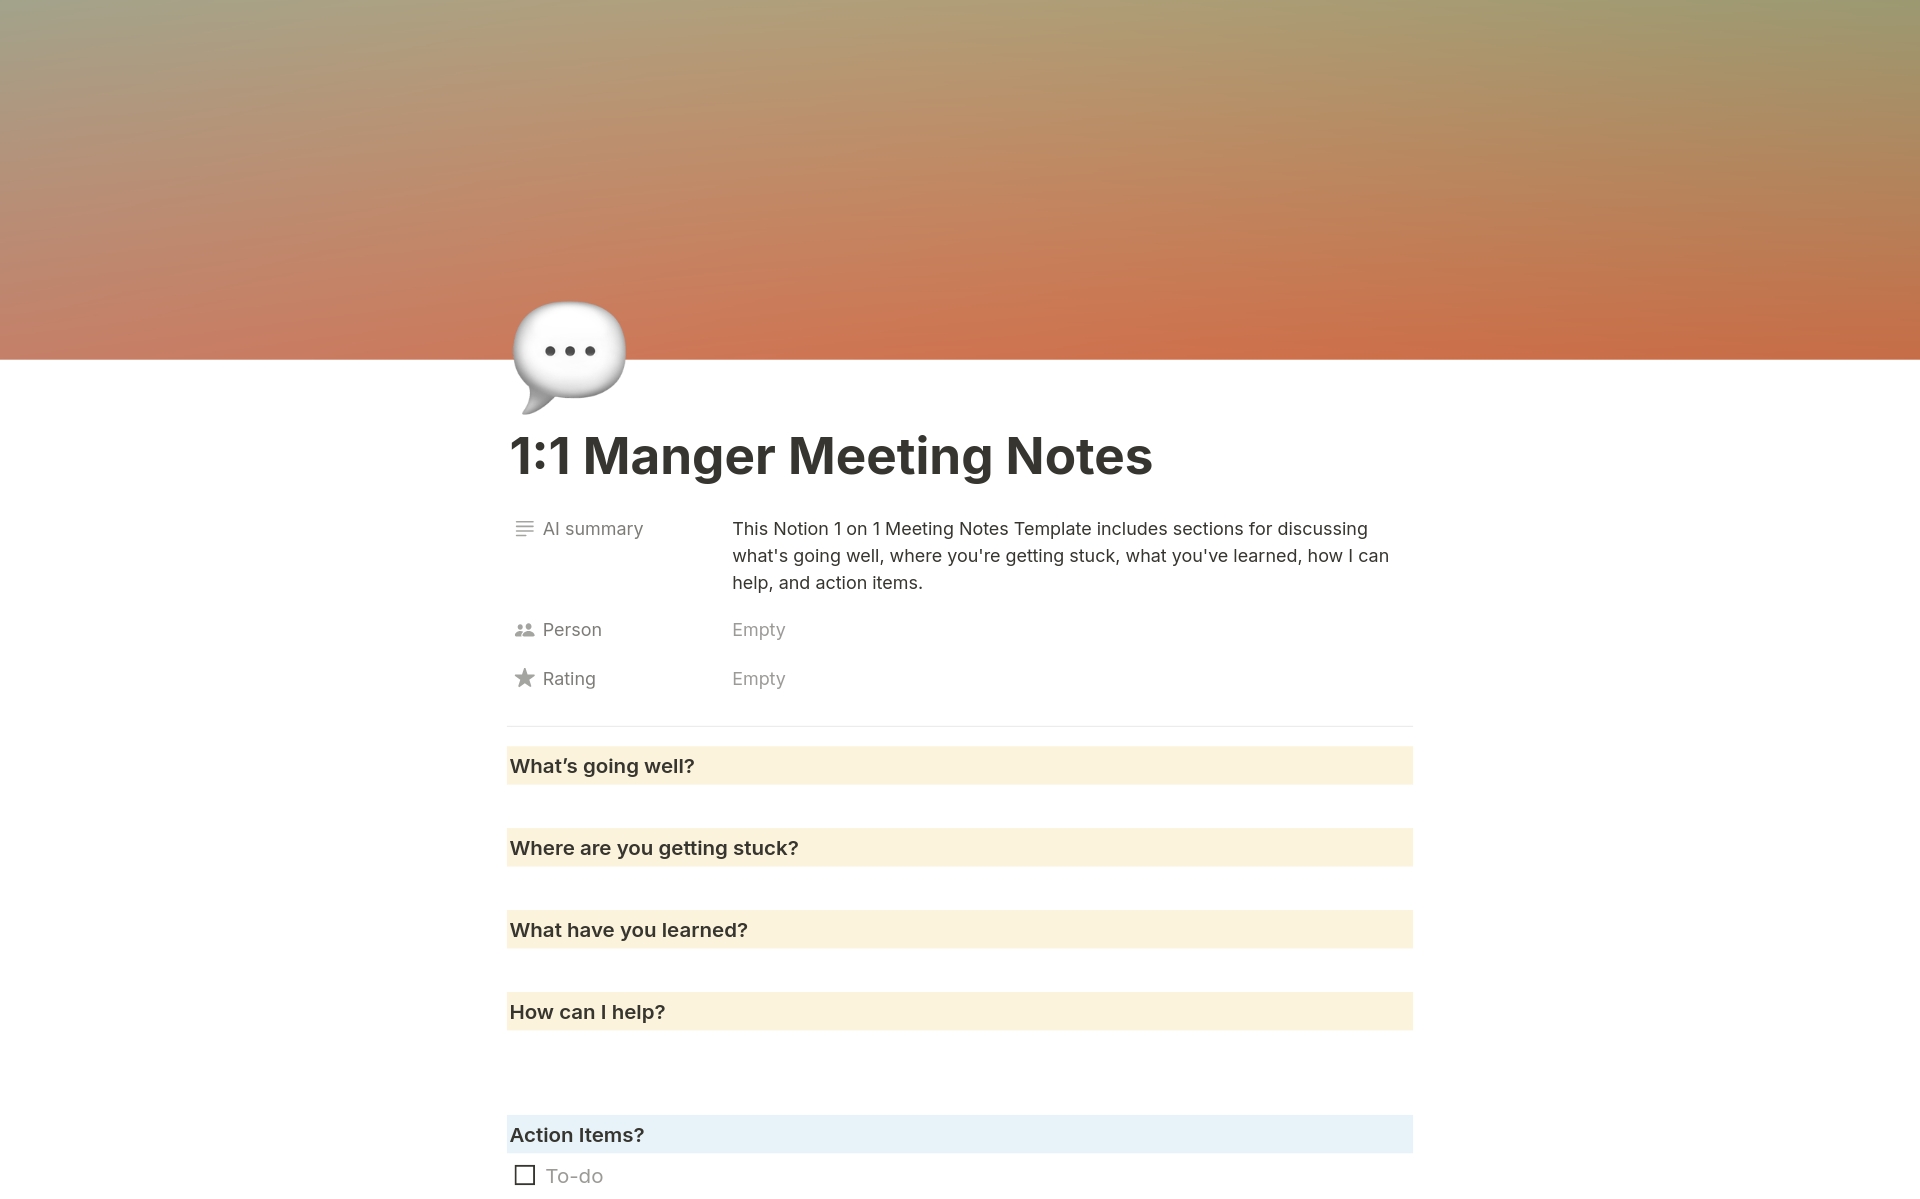 Vista previa de una plantilla para 1:1 Manager Meeting Notes 